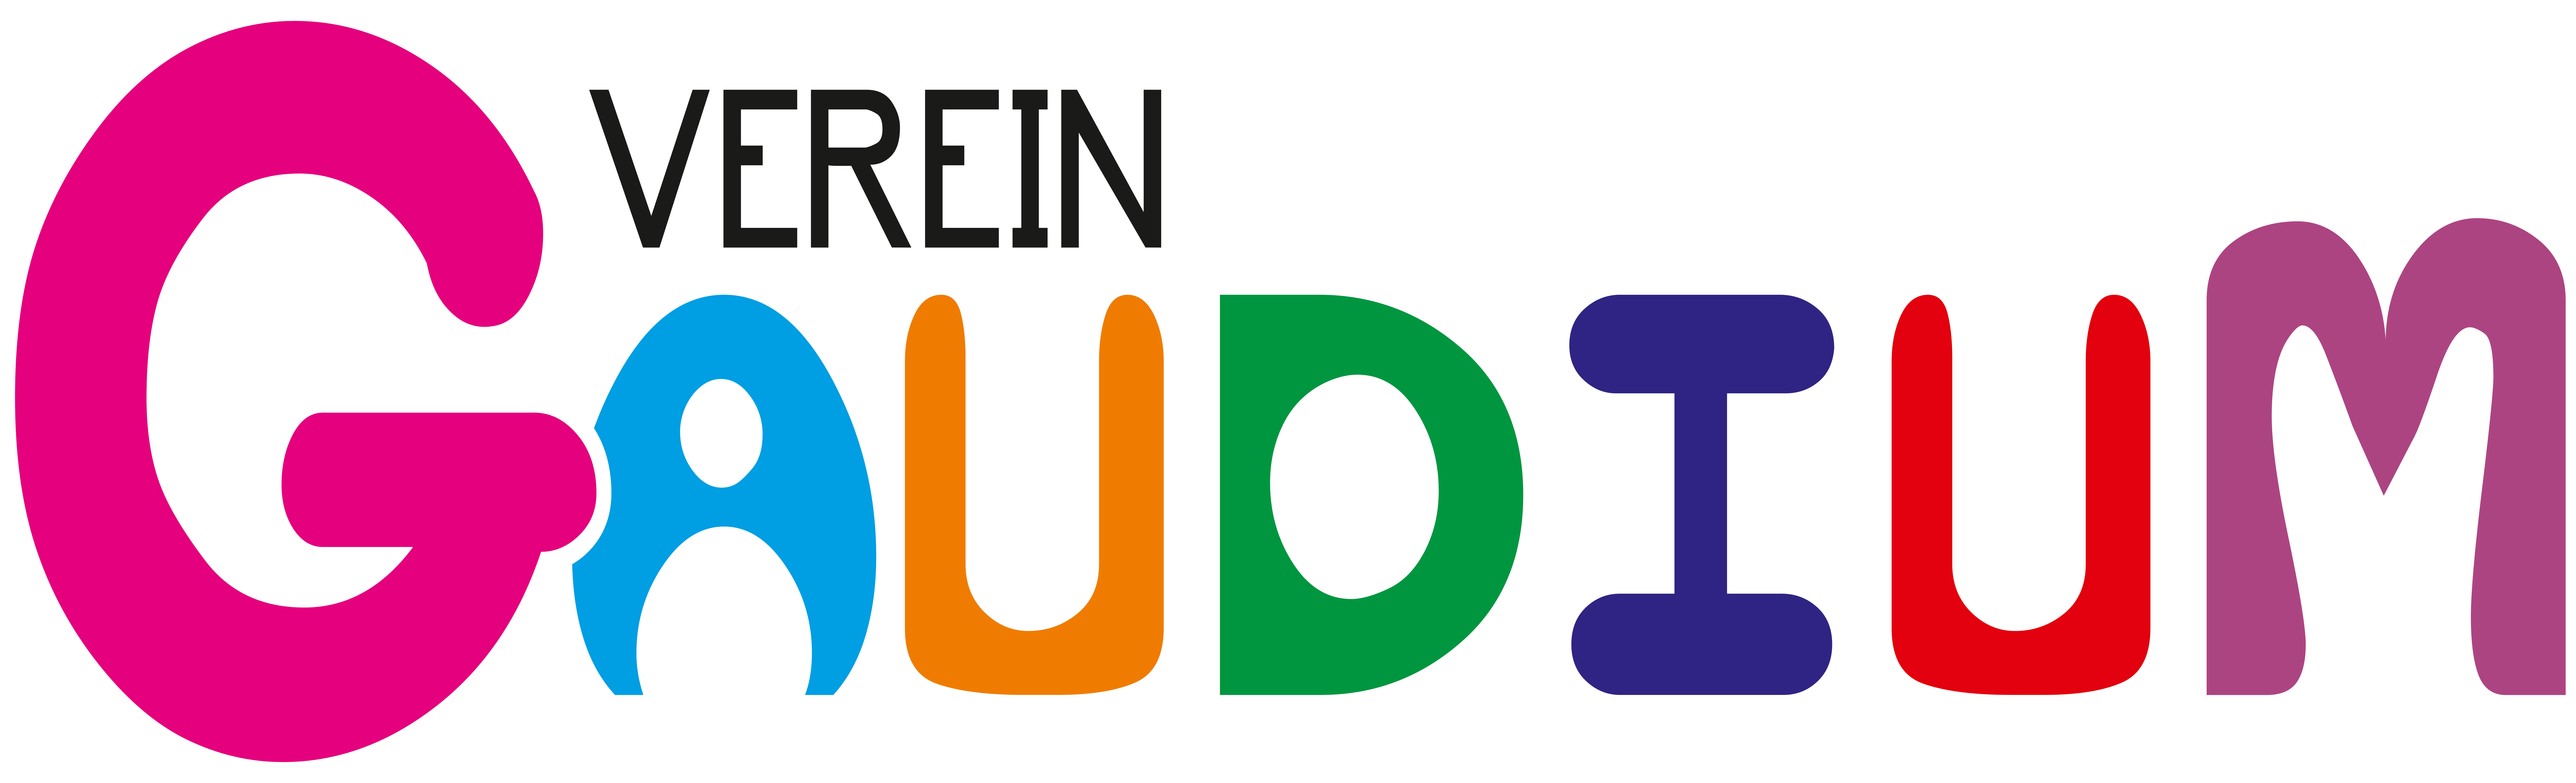 Verein verein_gaudium_Logo